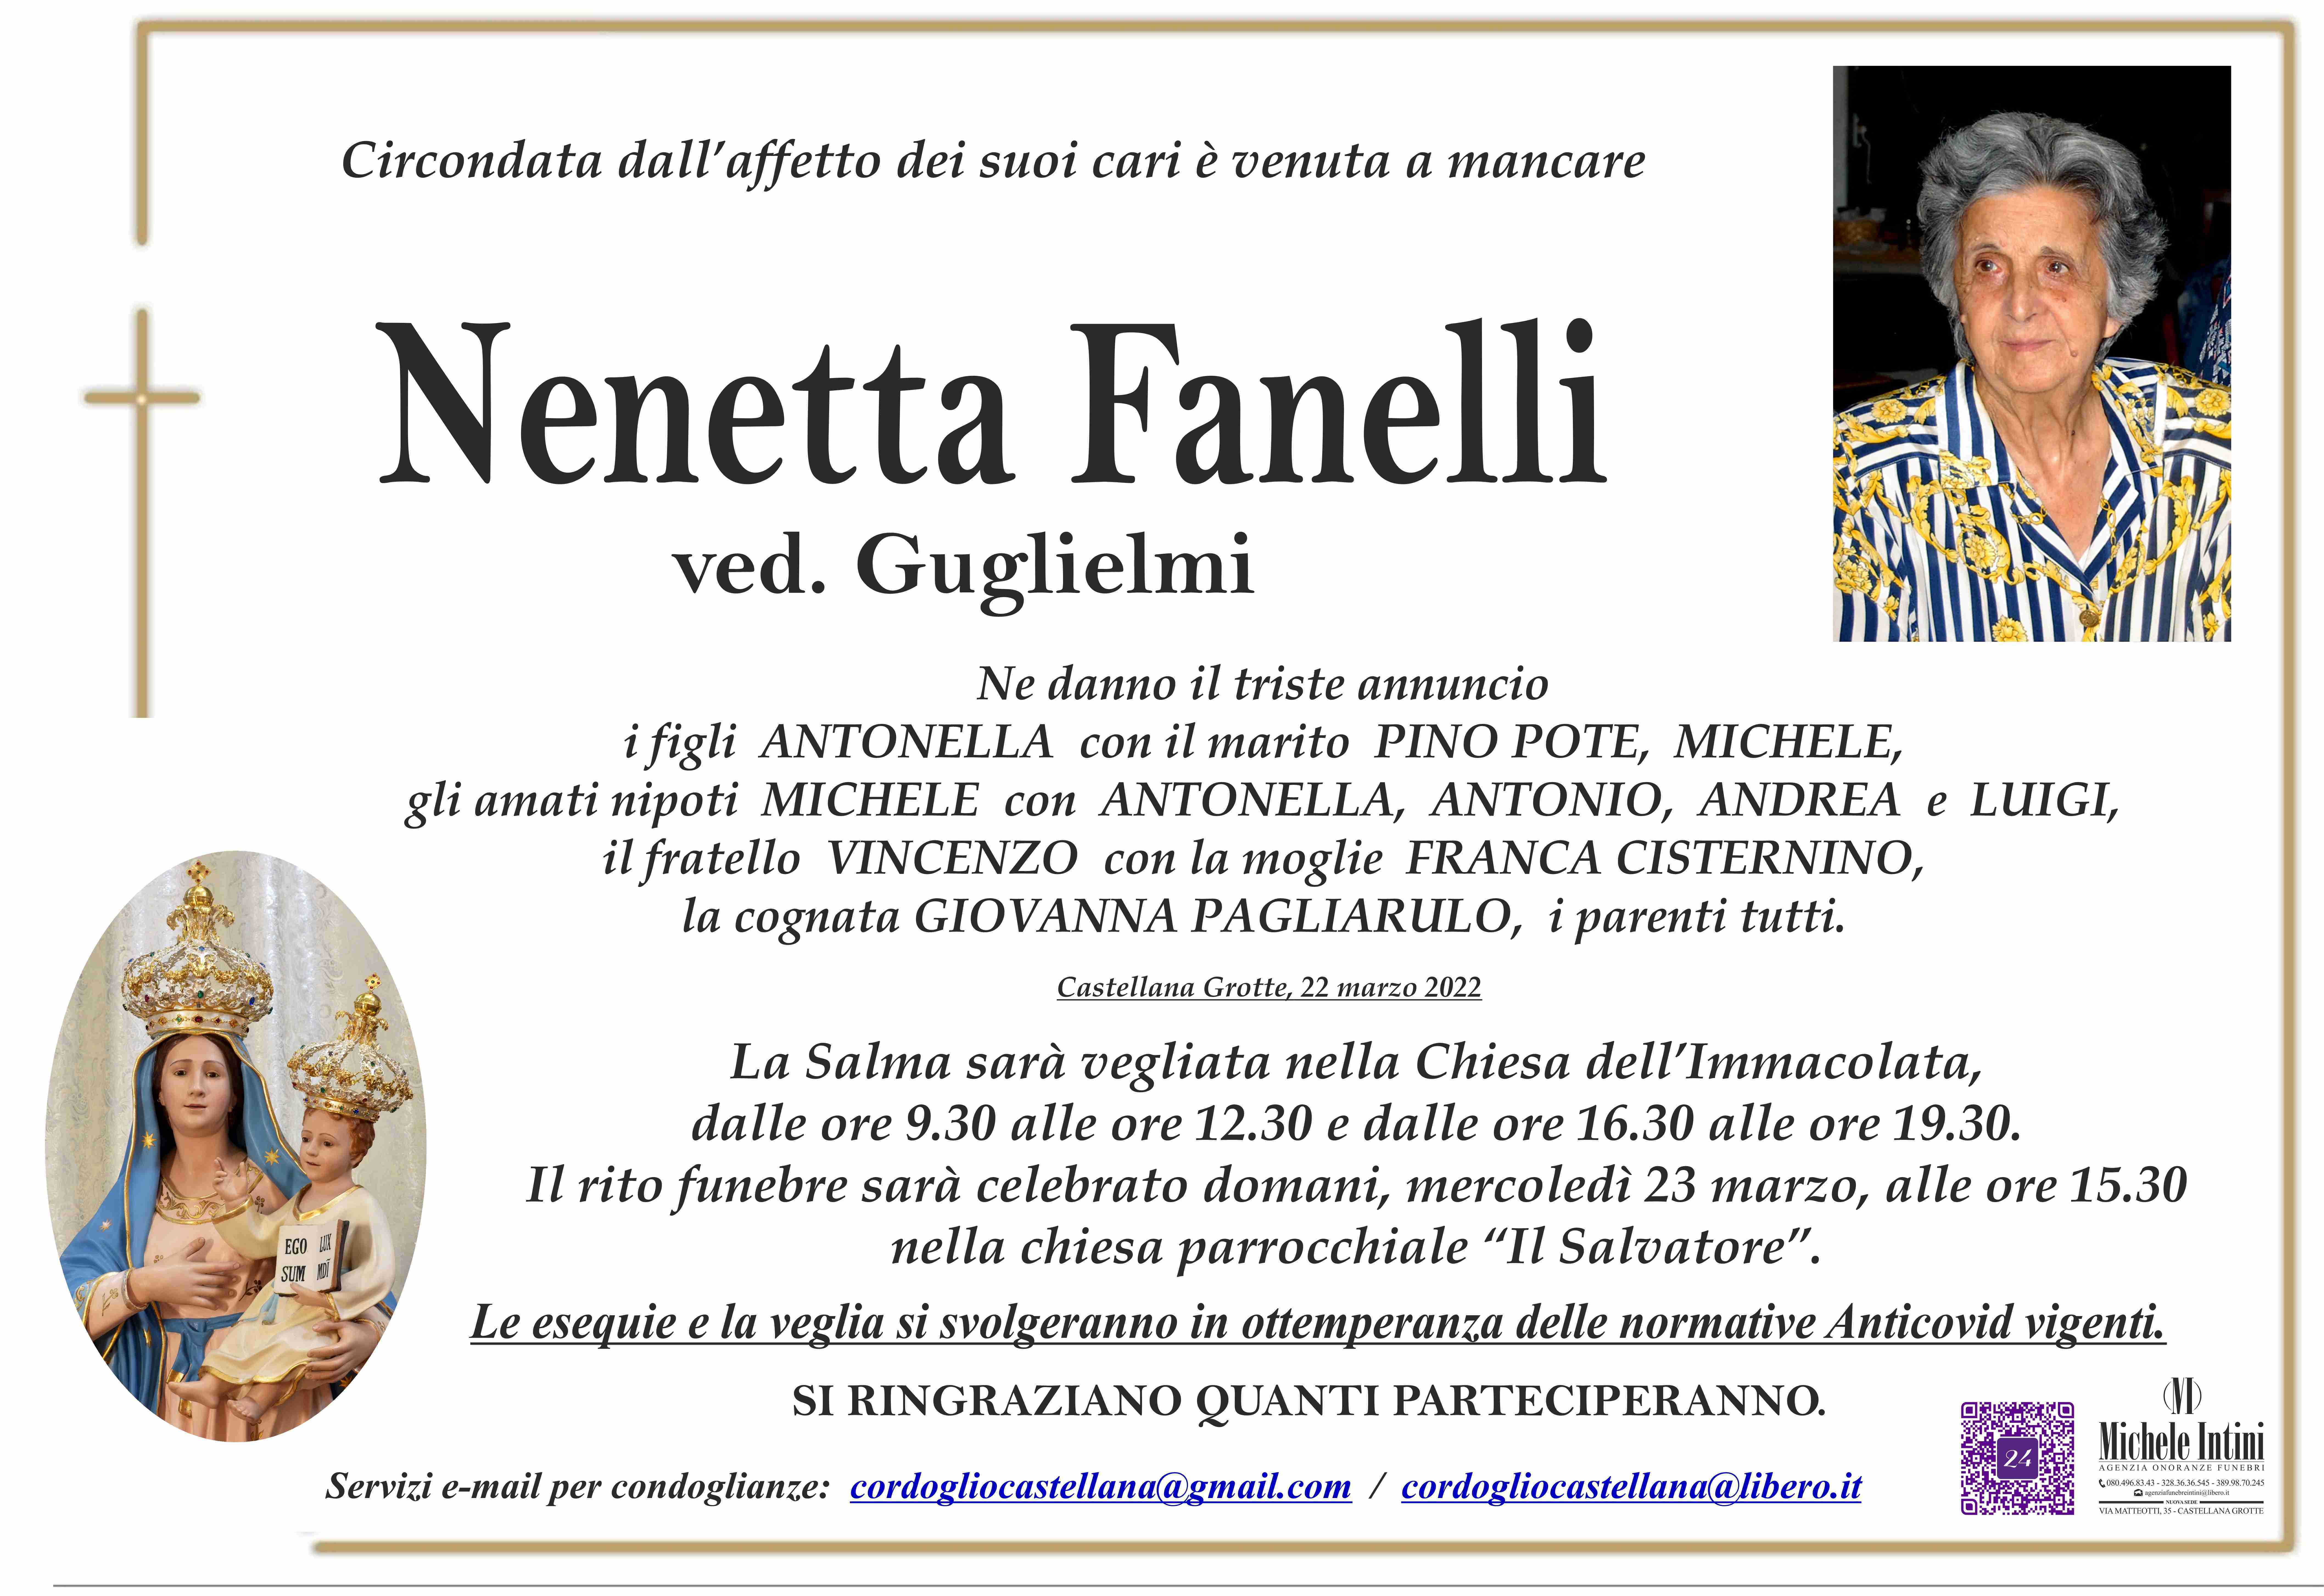 Nenetta Fanelli